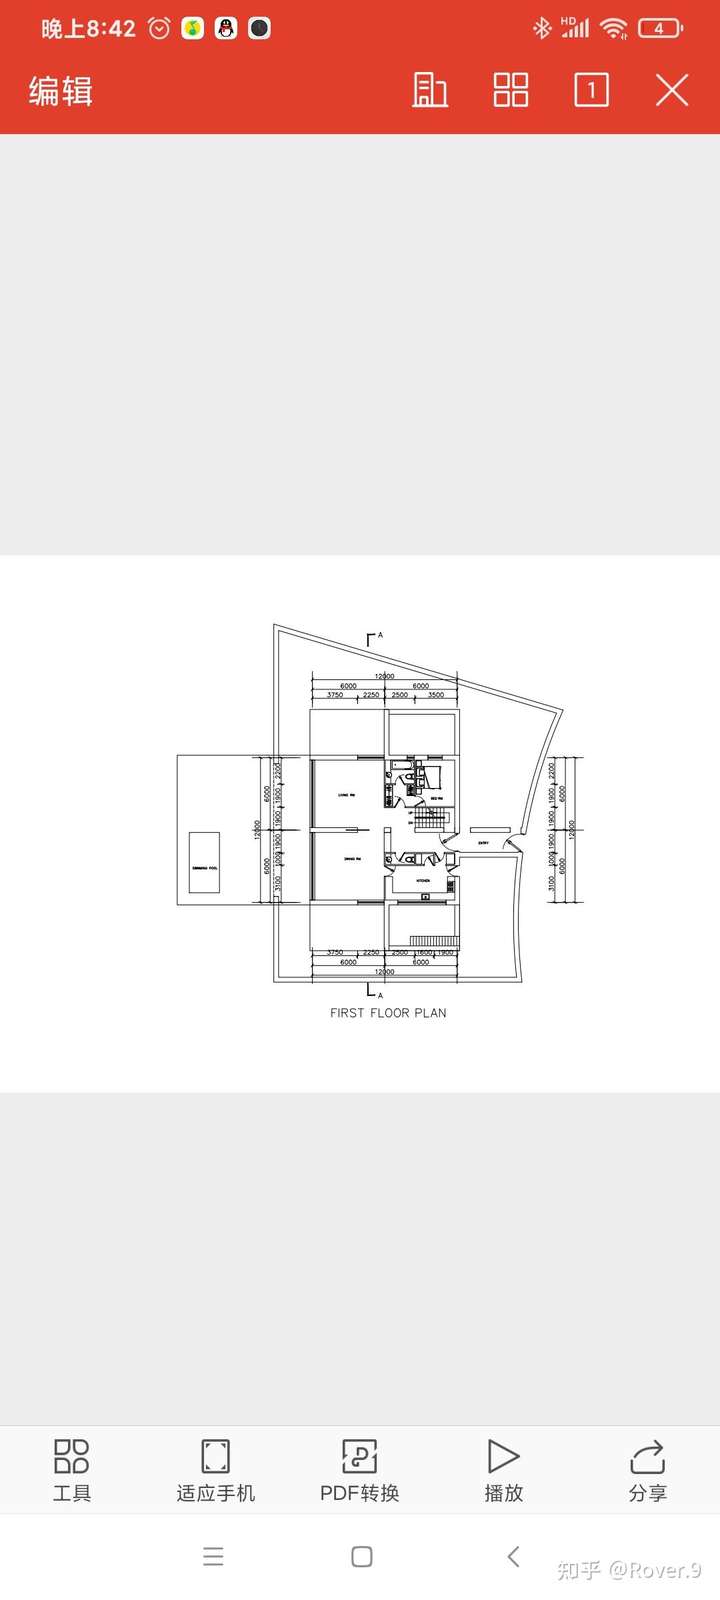 阿森西奥住宅的具体尺寸(具体到房间)最近在做模型分析,要知道它的每